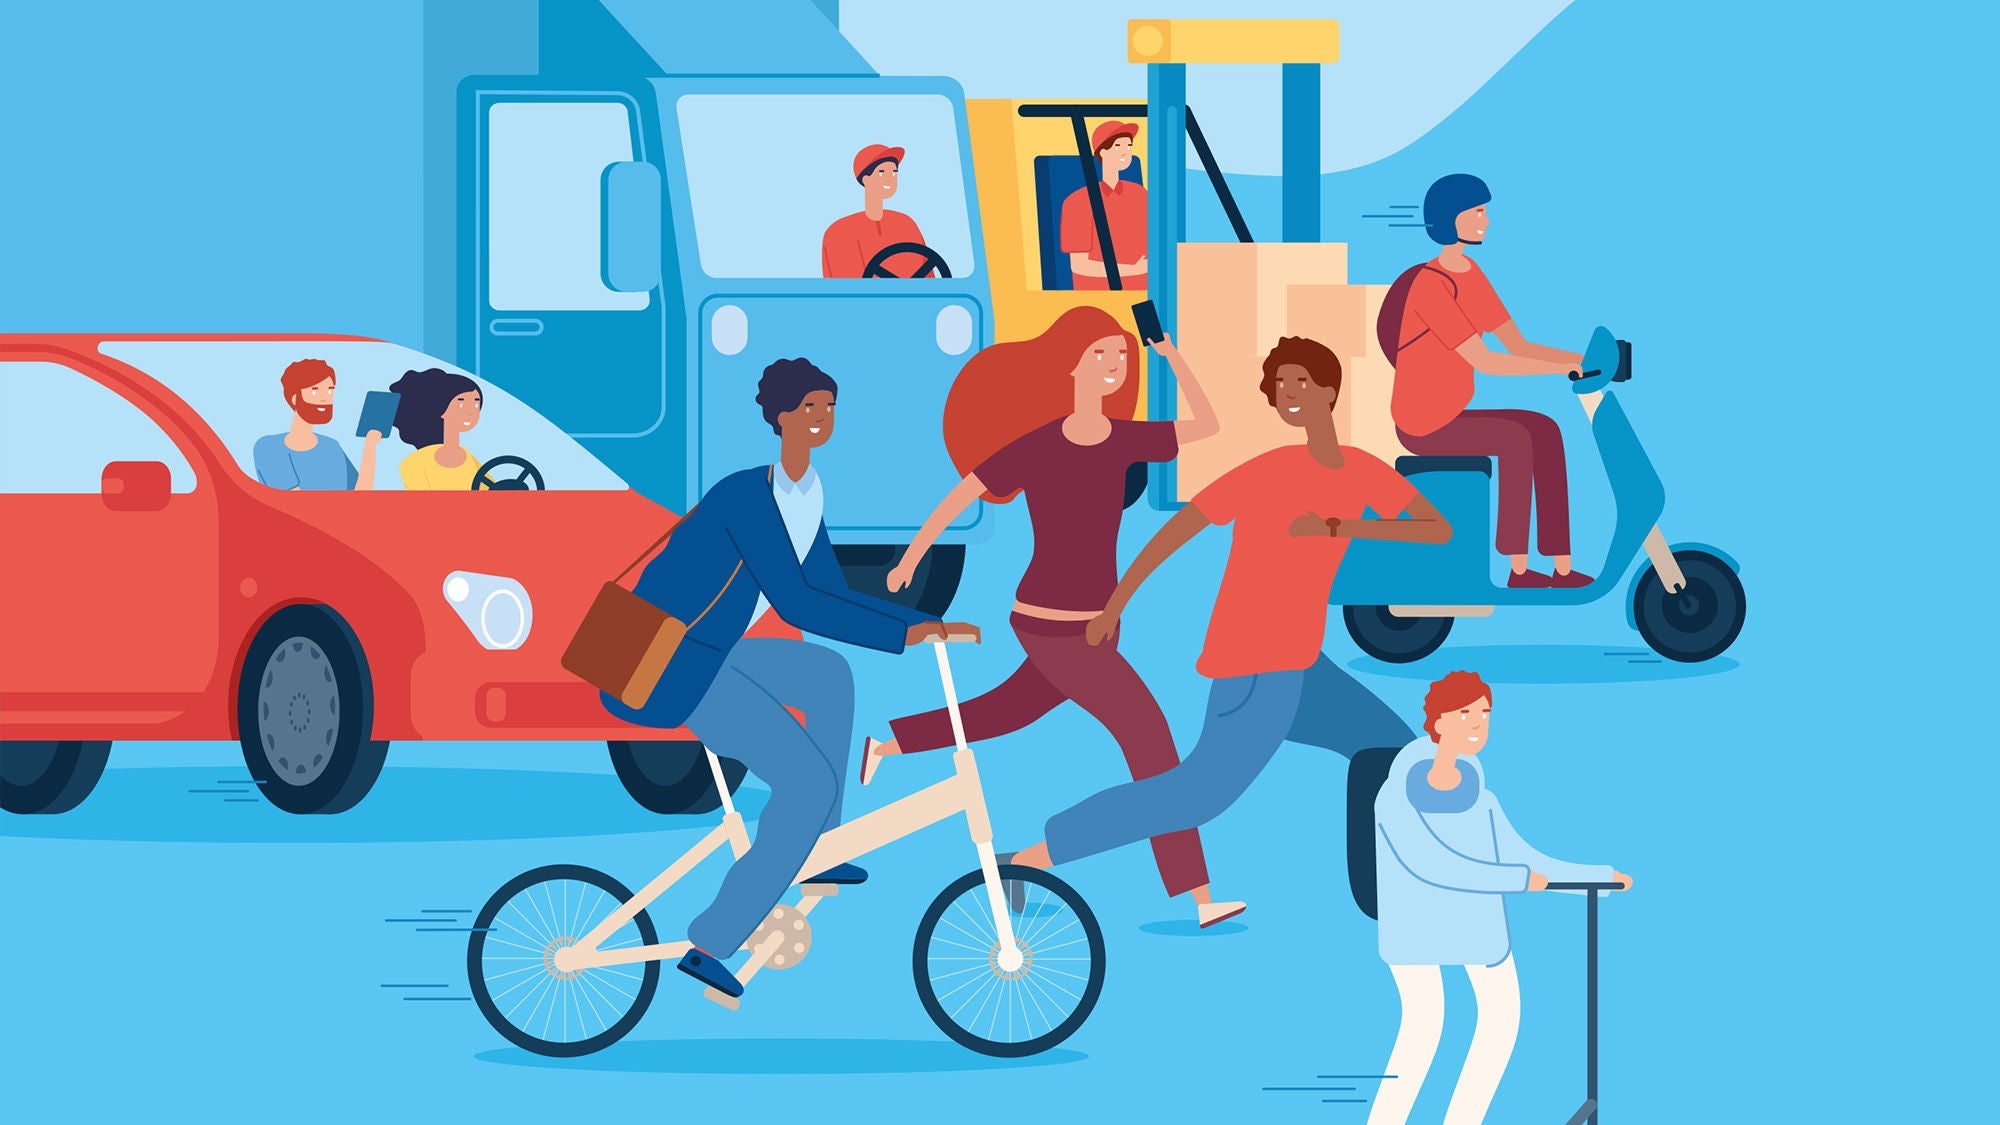 eine Illustration einer Straßensituation mit vielen Menschen, Fahrradfahrern, Scooter-Fahrer, Autos, Stapler etc.